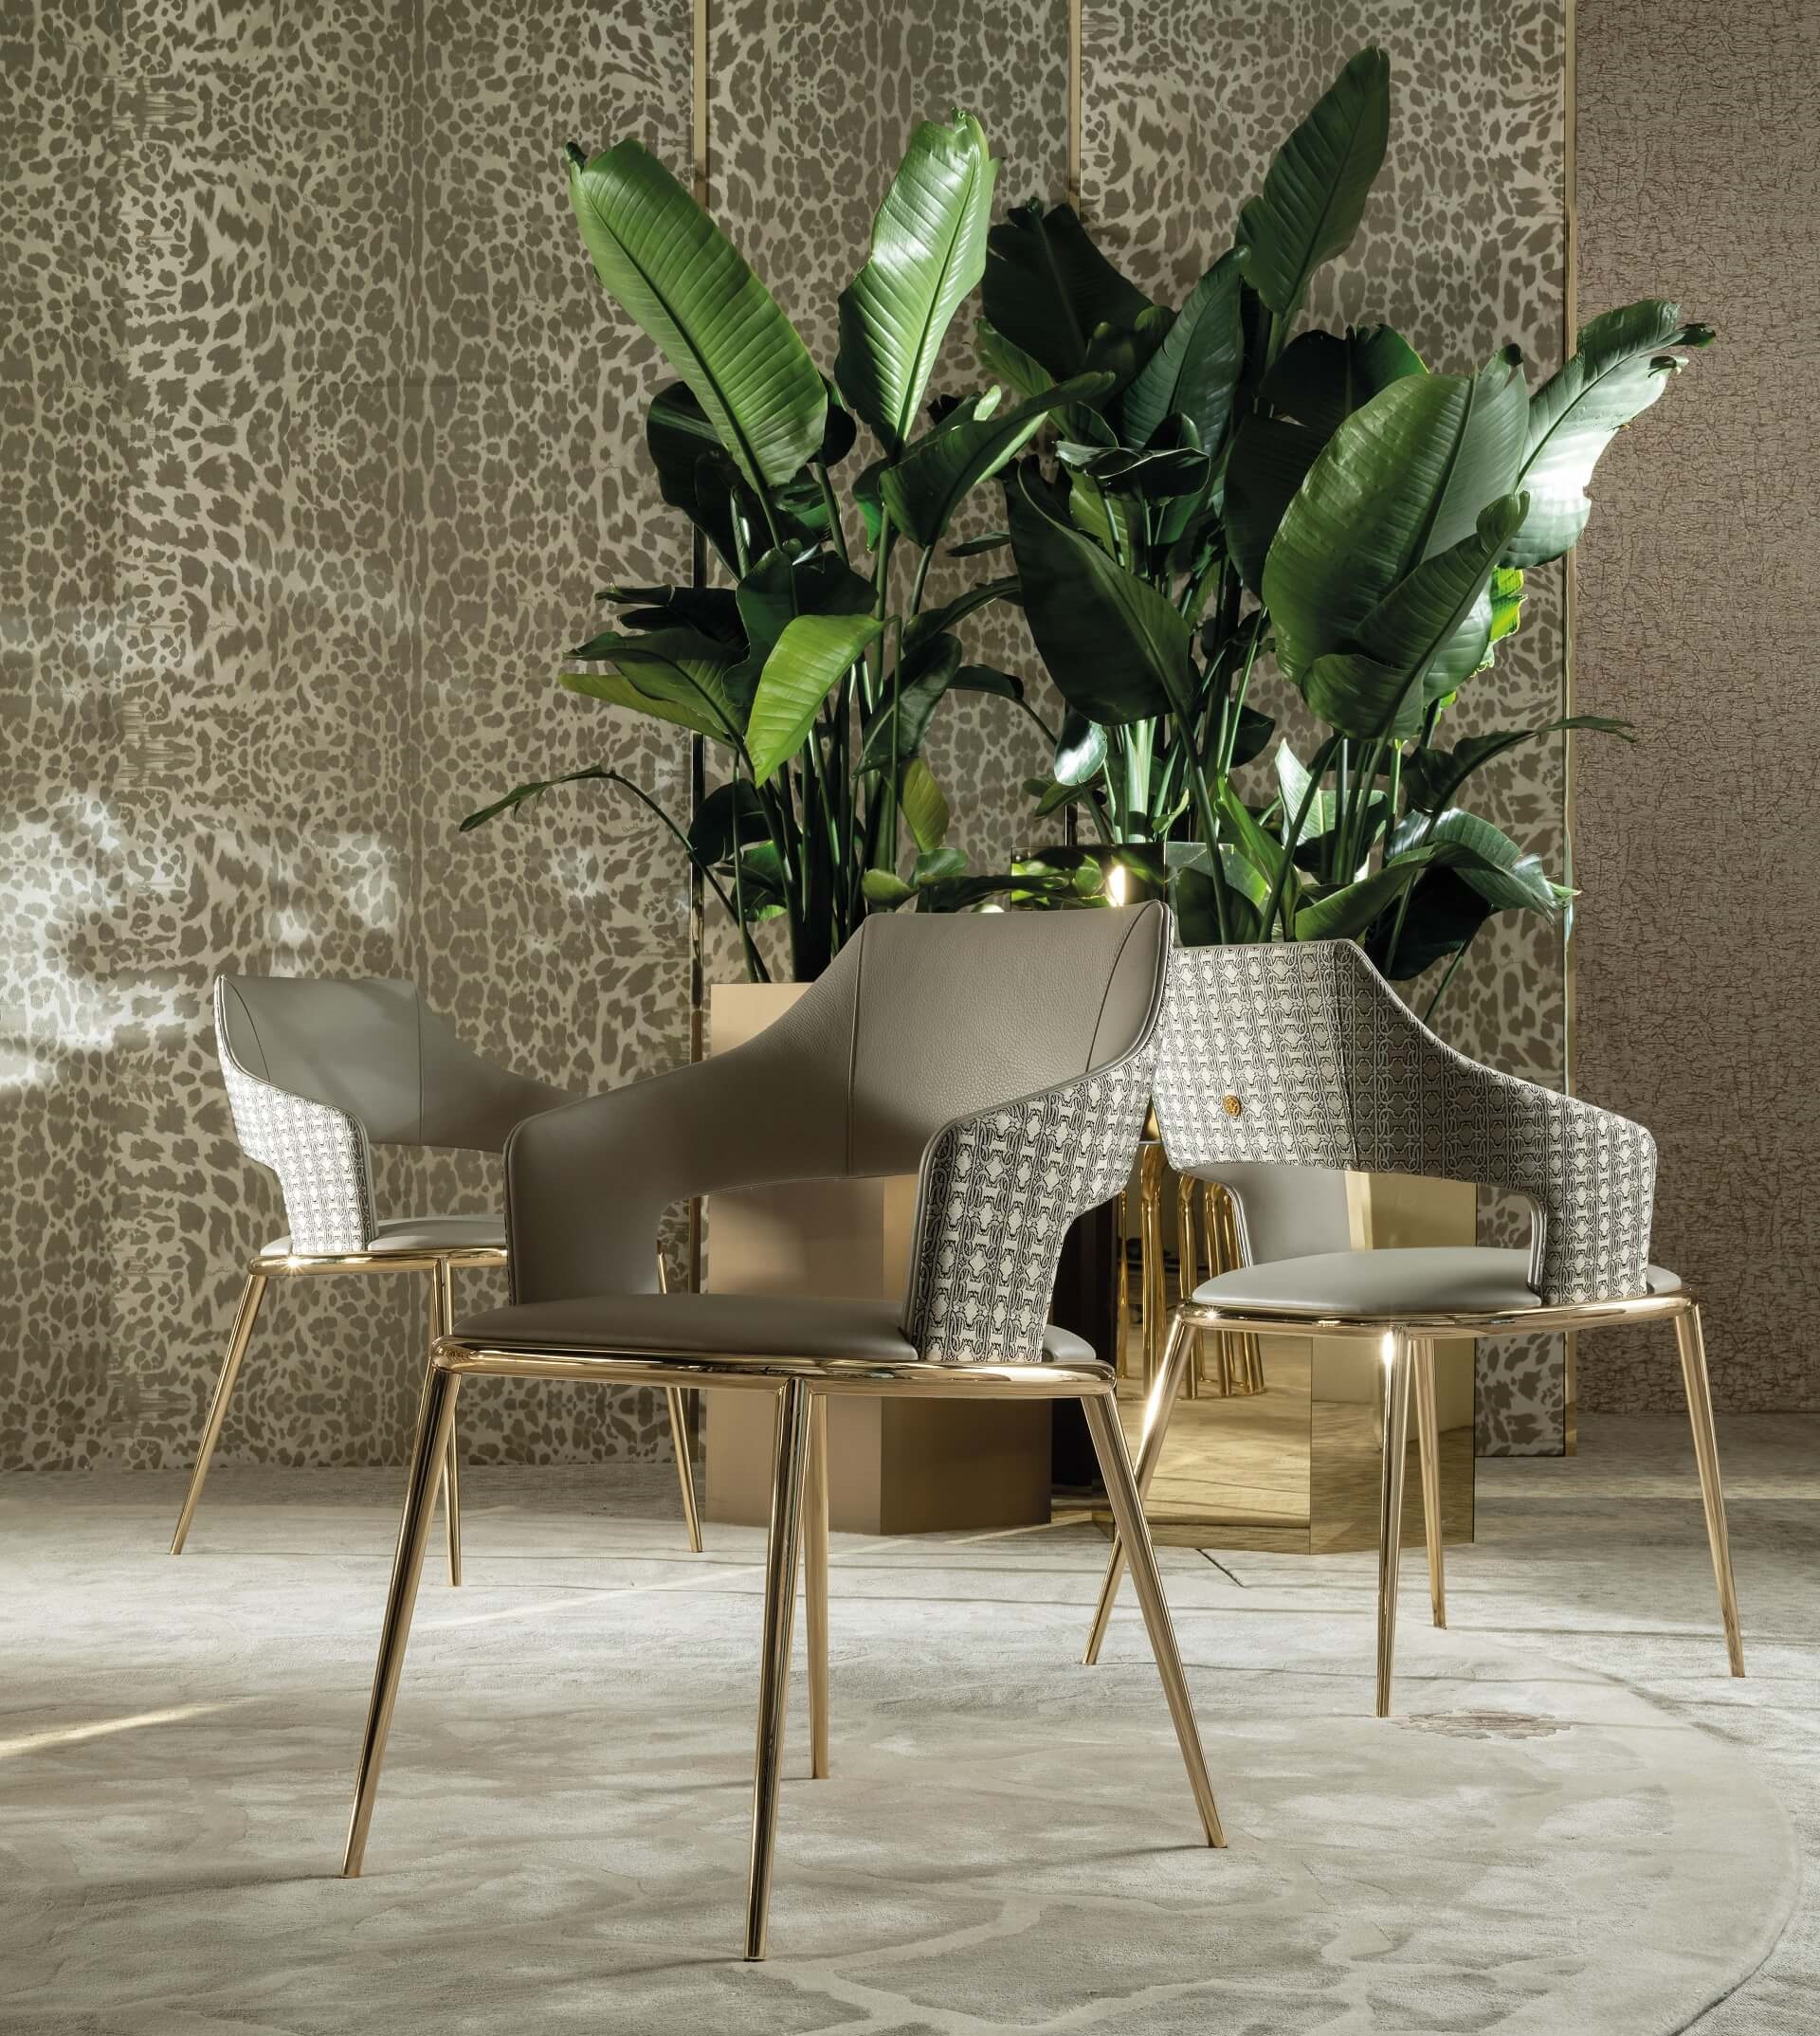 Roberto Cavalli Home Interiors_Shira chair